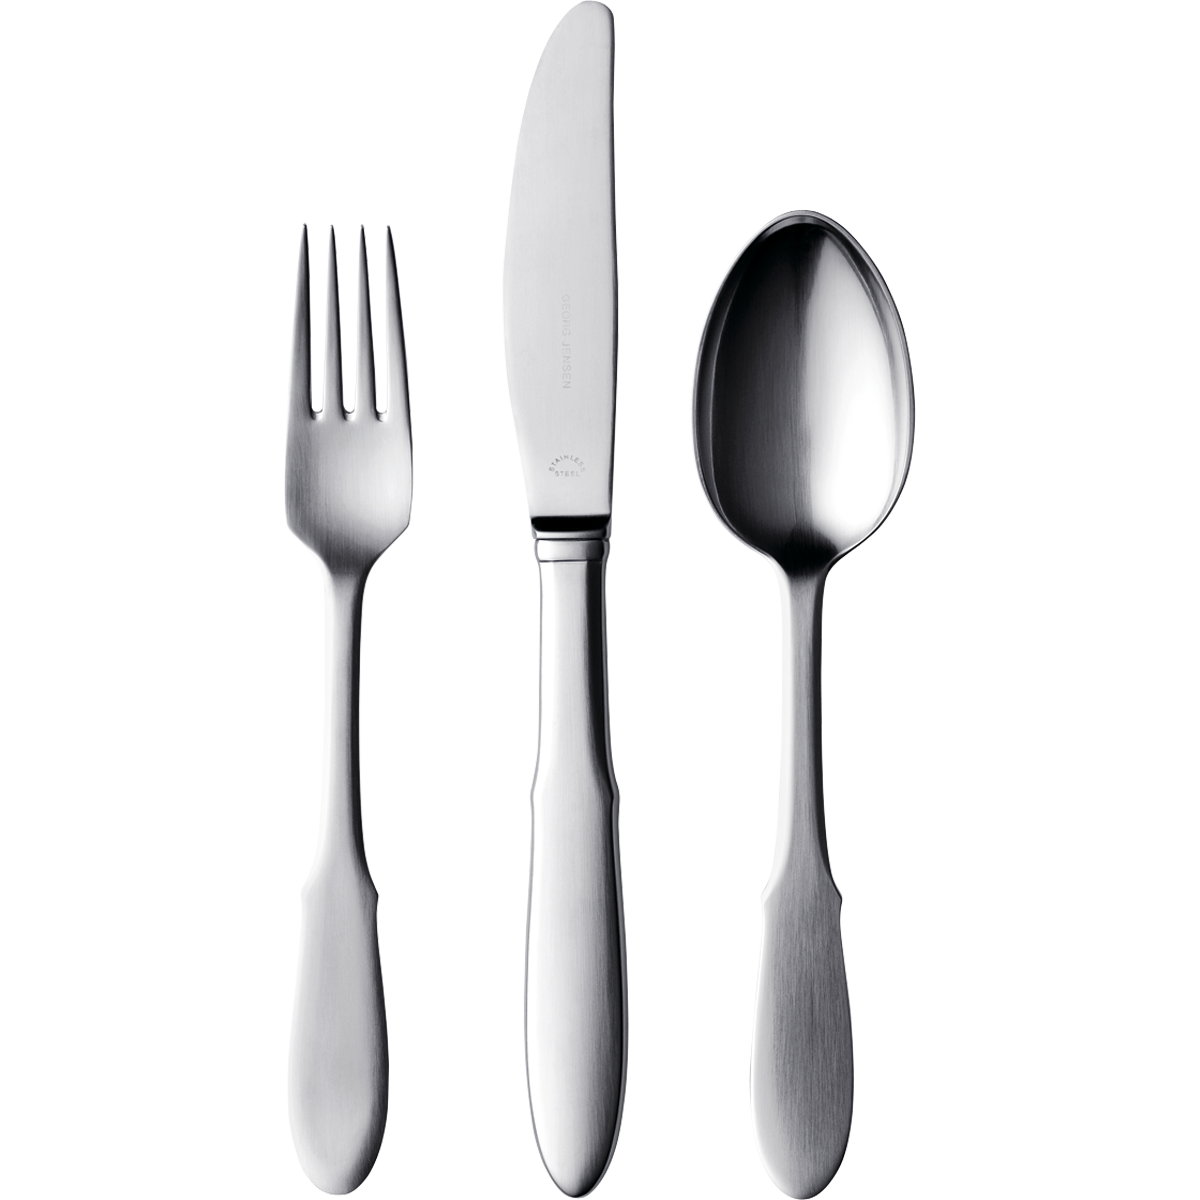 Forchetta, cucchiaio e coltello